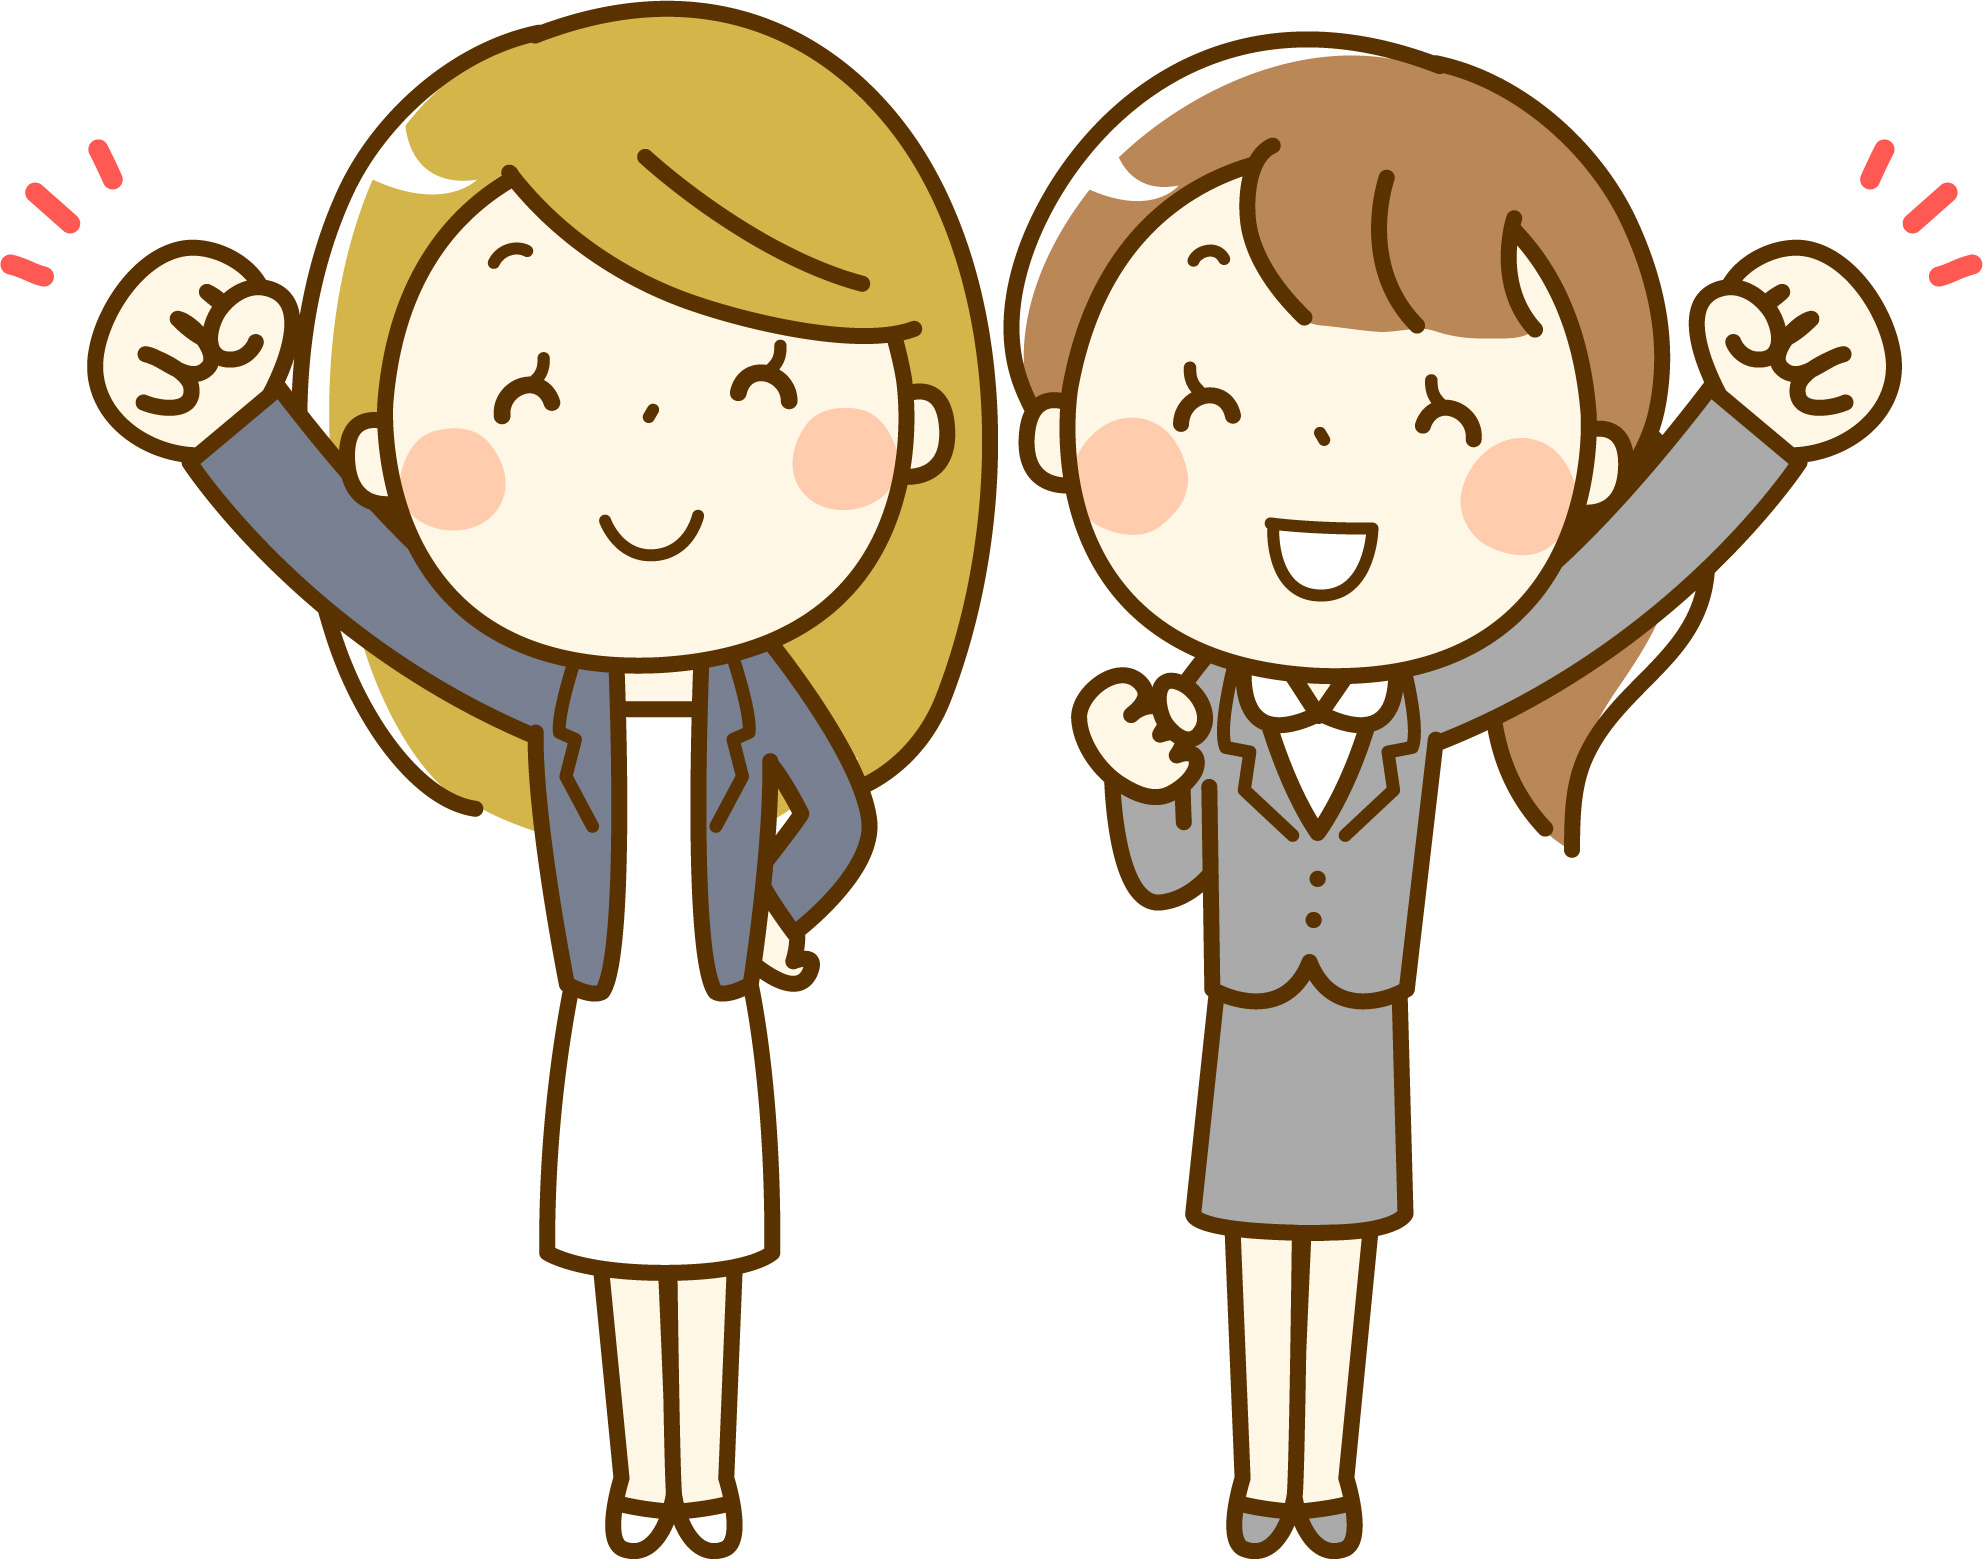 【大津市】女性ビジネスプランコンテスト、セミナーが始まります！参加無料！無料託児あり〈8月24日〉